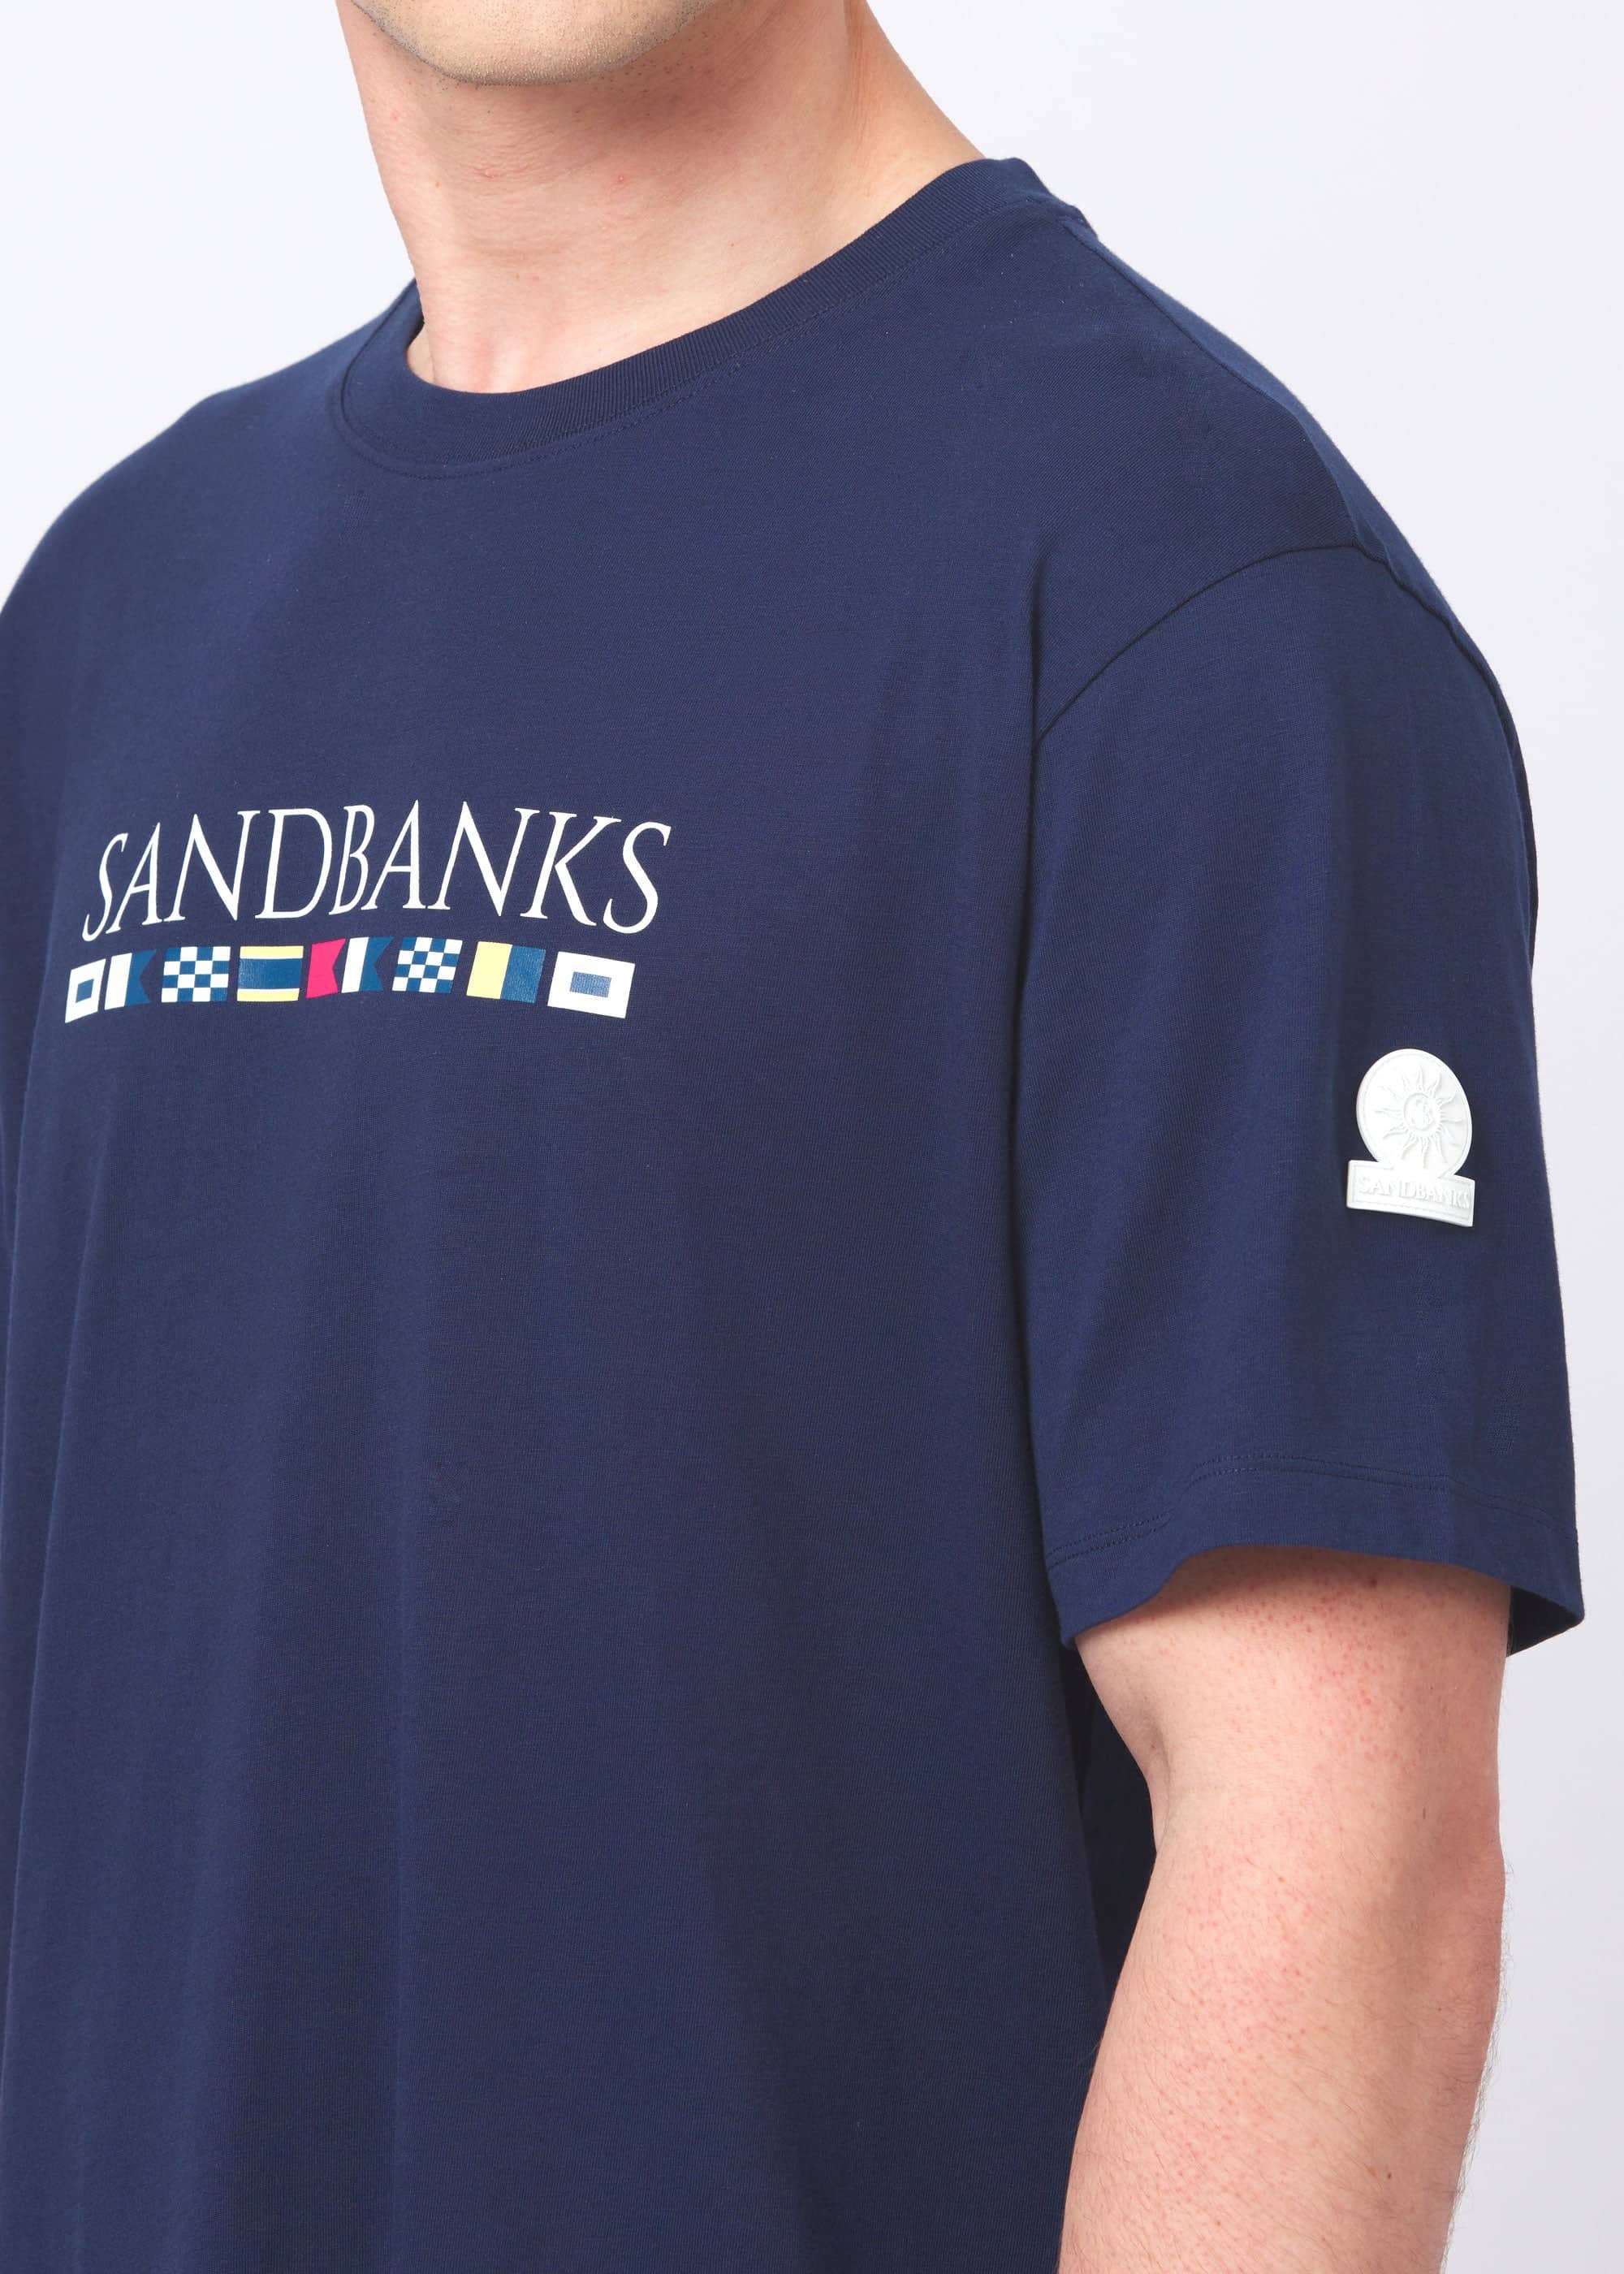 Sandbanks Signal Print T-Shirt - Navy - Sandbanks